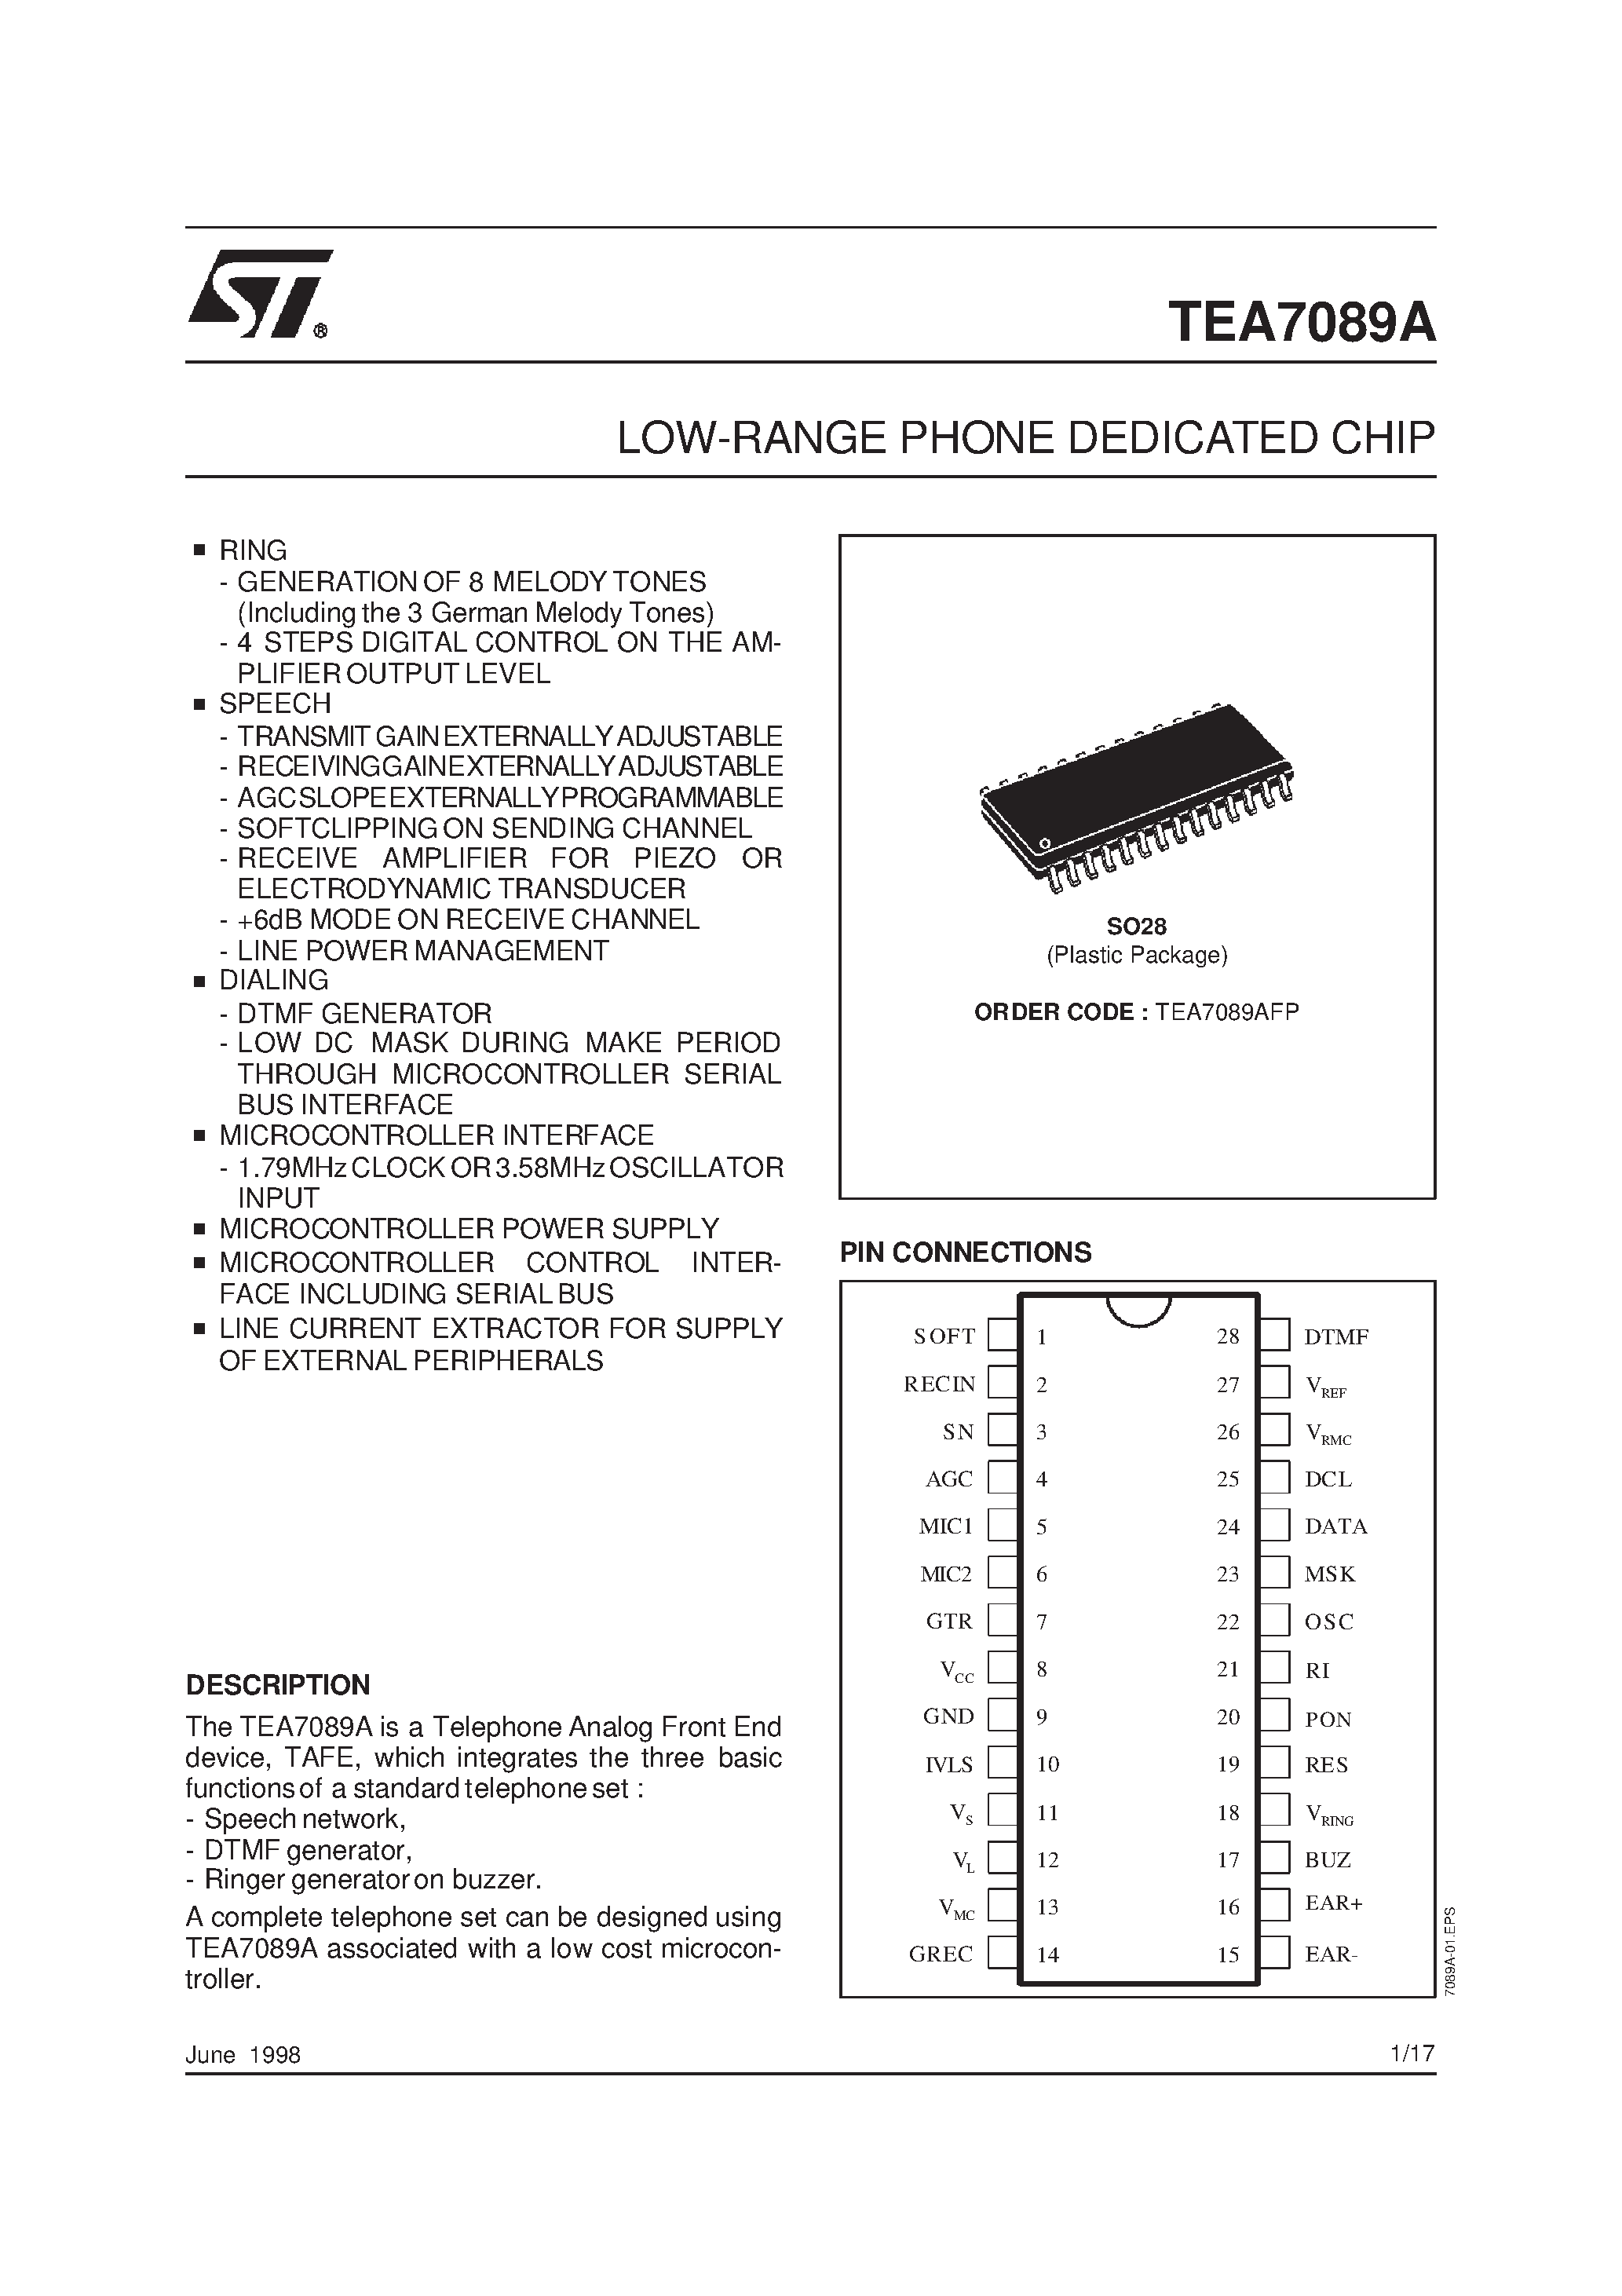 Datasheet TEA7089 - LOW-RANGE PHONE DEDICATED CHIP page 1